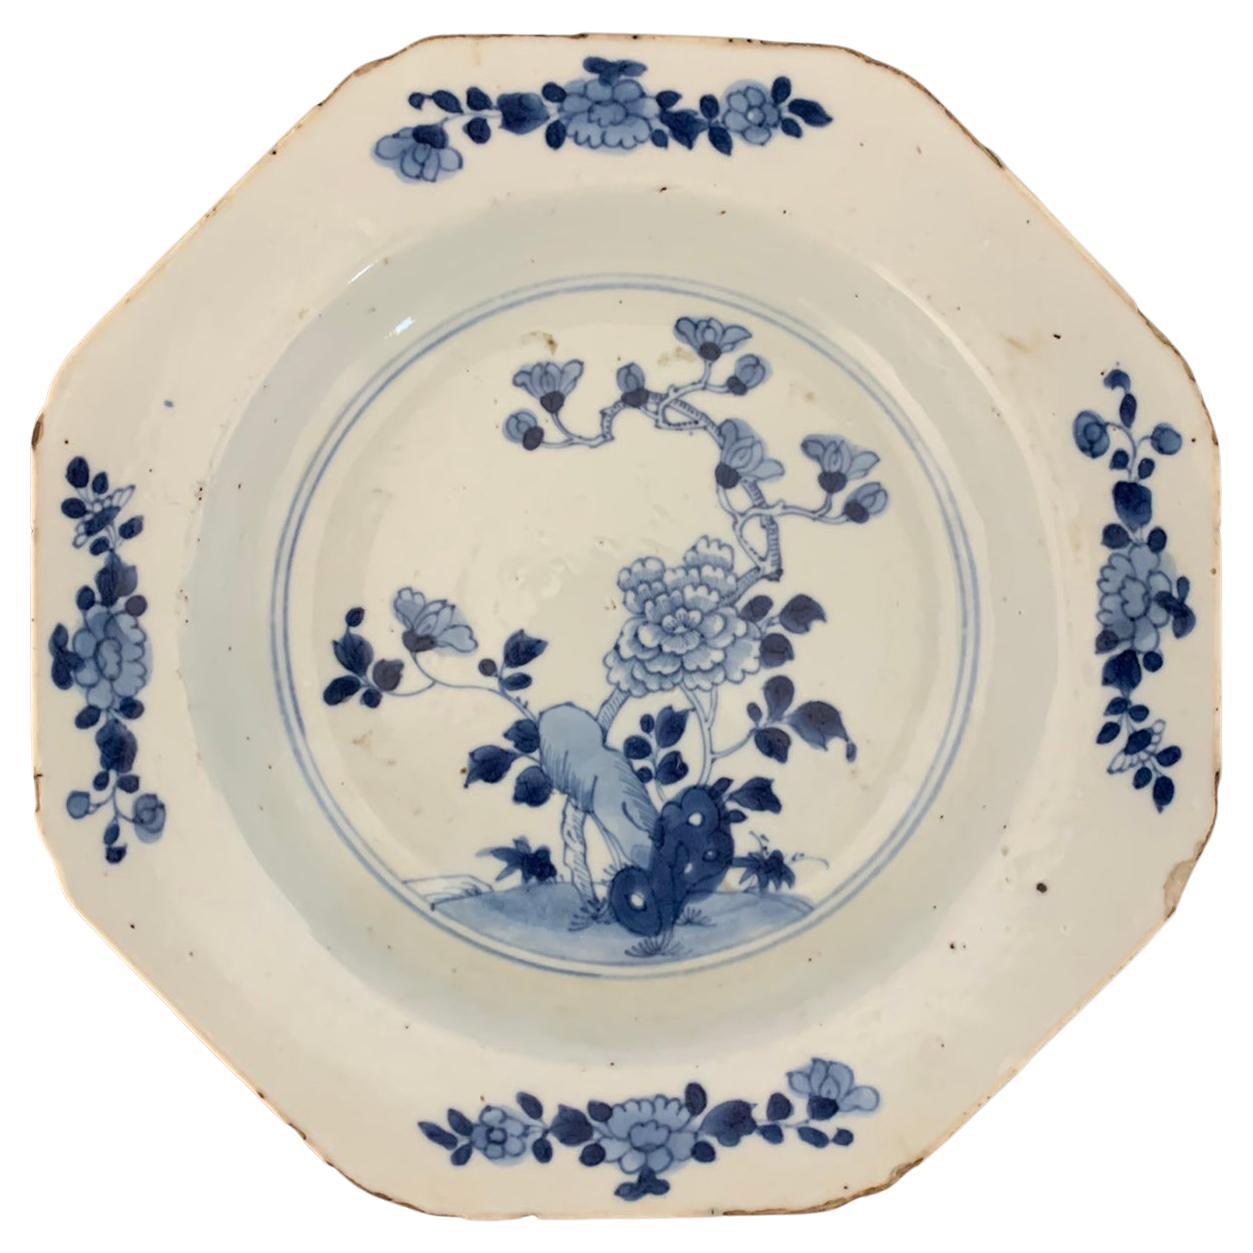 Chinesischer Suppenteller aus chinesischem Porzellan in Blau und Weiß aus der blauen Familie, 18. Jahrhundert